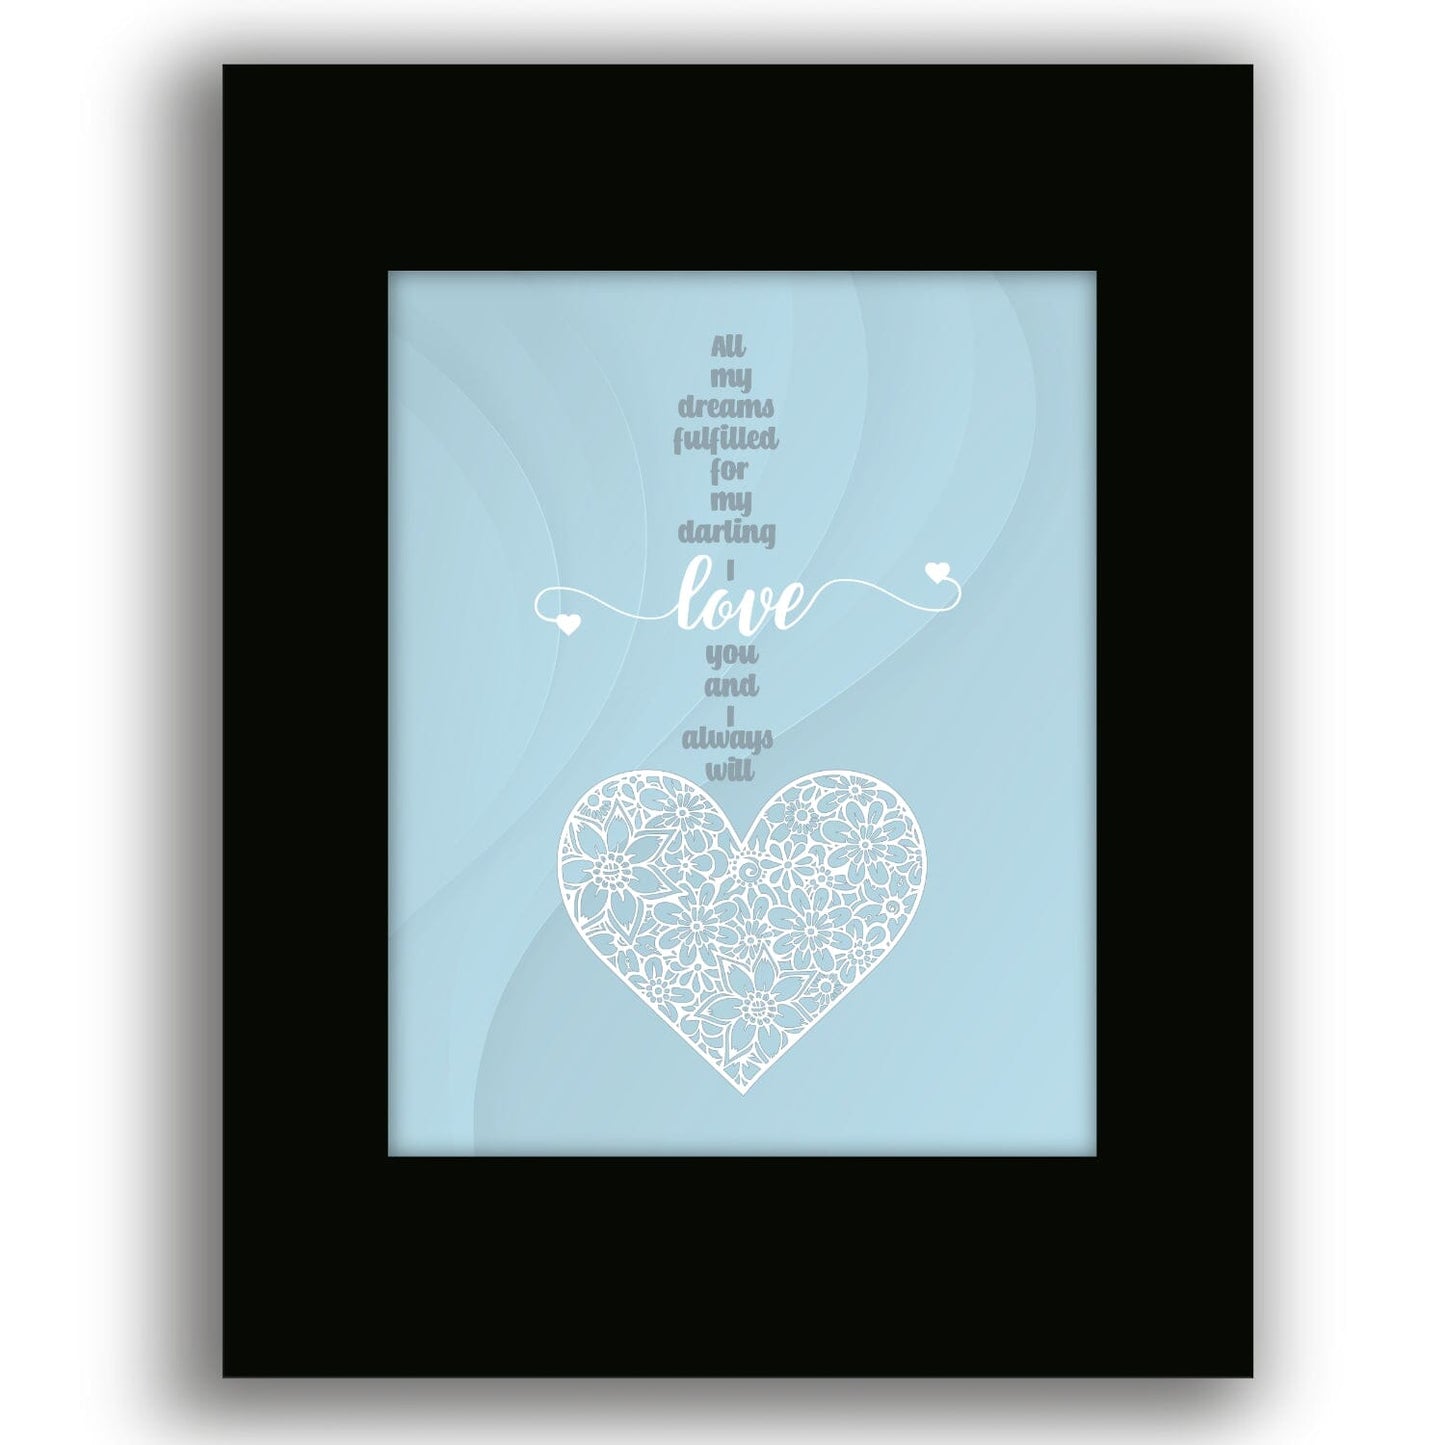 Love Me Tender by Elvis Presley - Wedding Song Lyric Print Song Lyrics Art Song Lyrics Art 8x10 Black Matted Print 